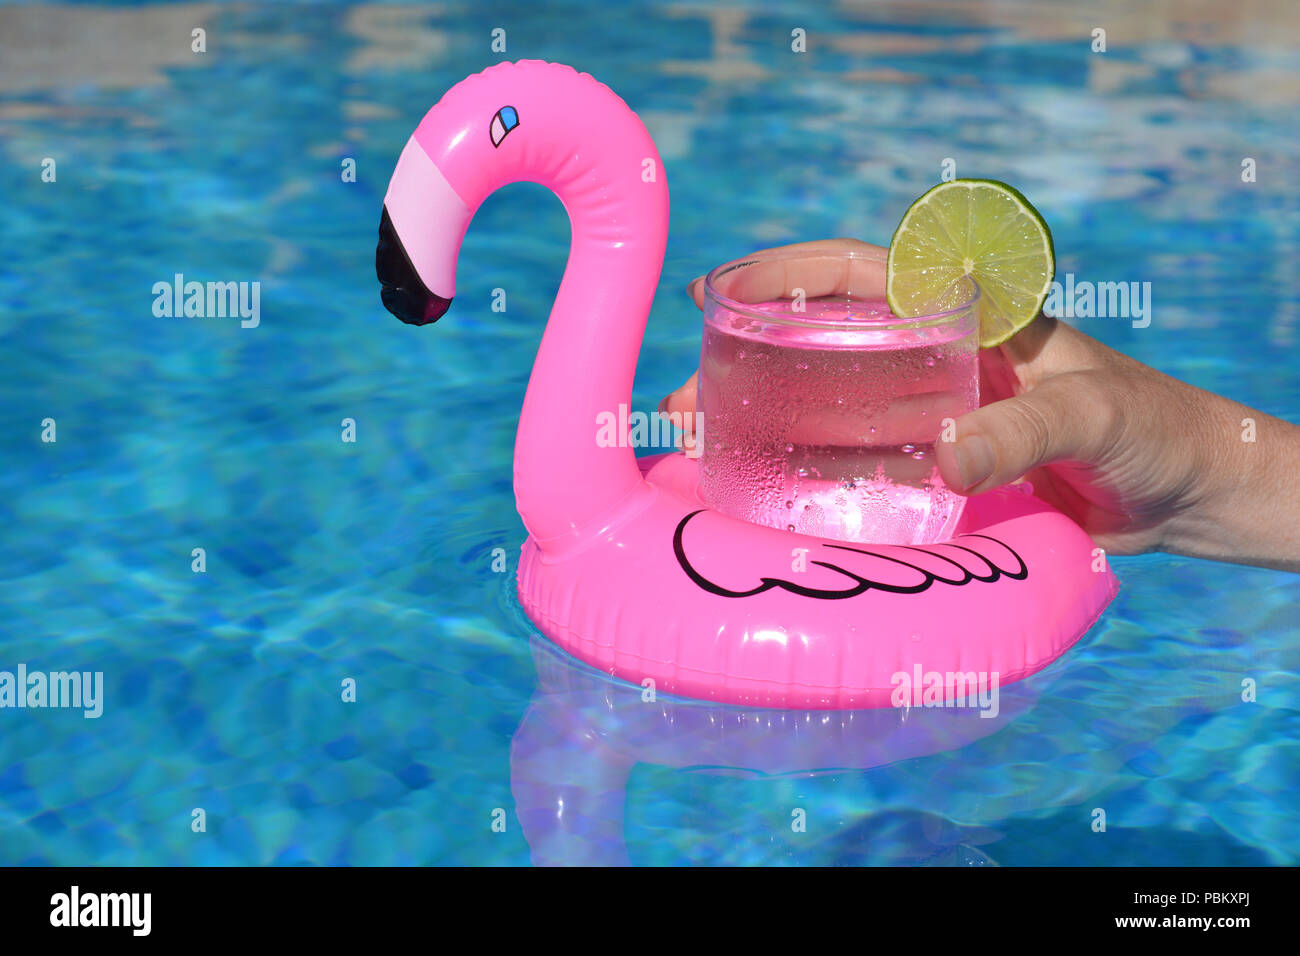 Sommer Vibes! Woman's Hand, mit einem kalten Getränk in einem aufblasbaren rosa Flamingo schwimmend Getränke Halter in einem Pool Stockfoto